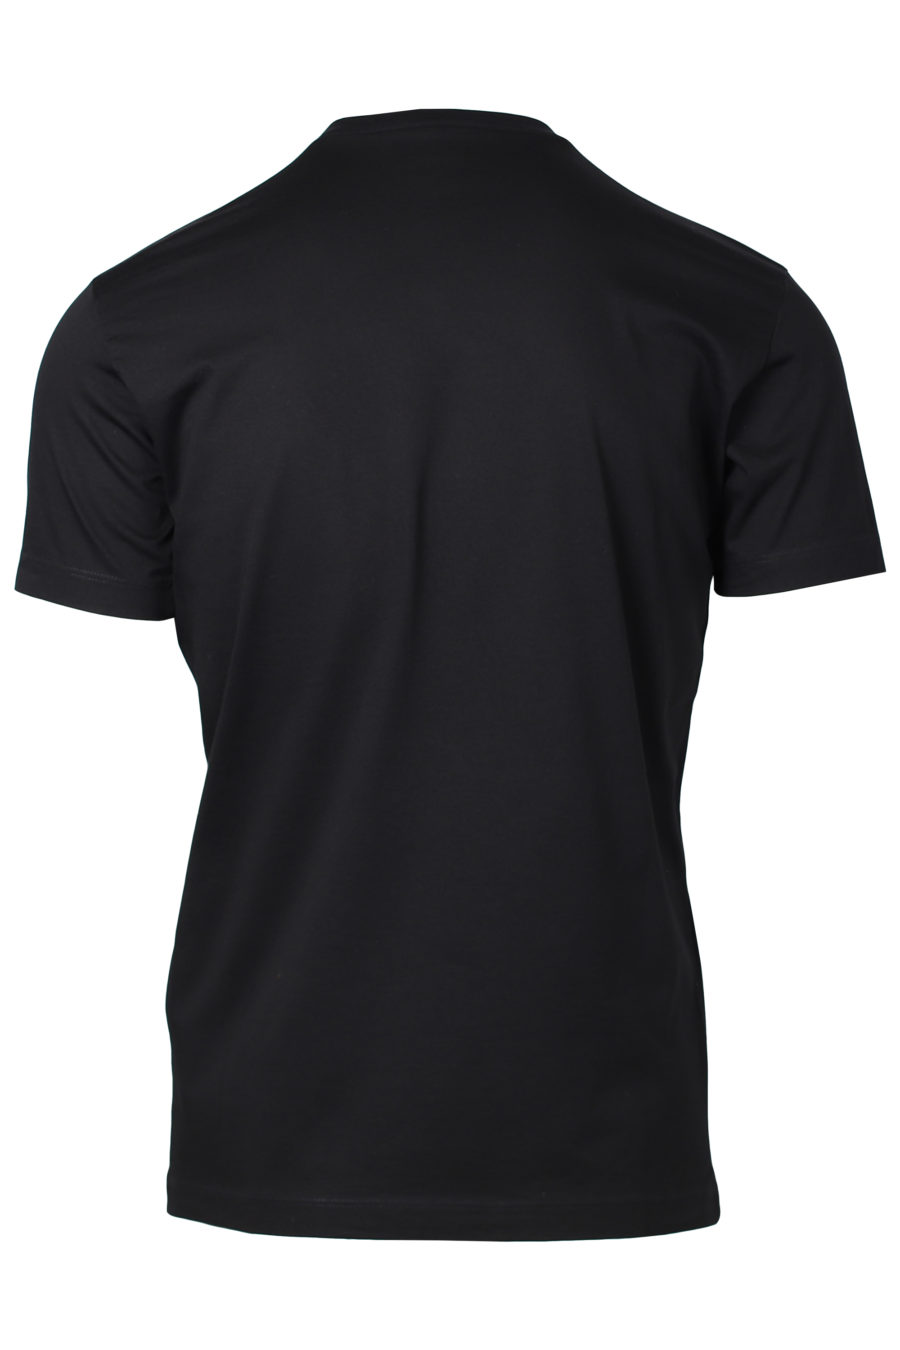 Schwarzes T-Shirt mit Blattaufdruck - IMG 2219